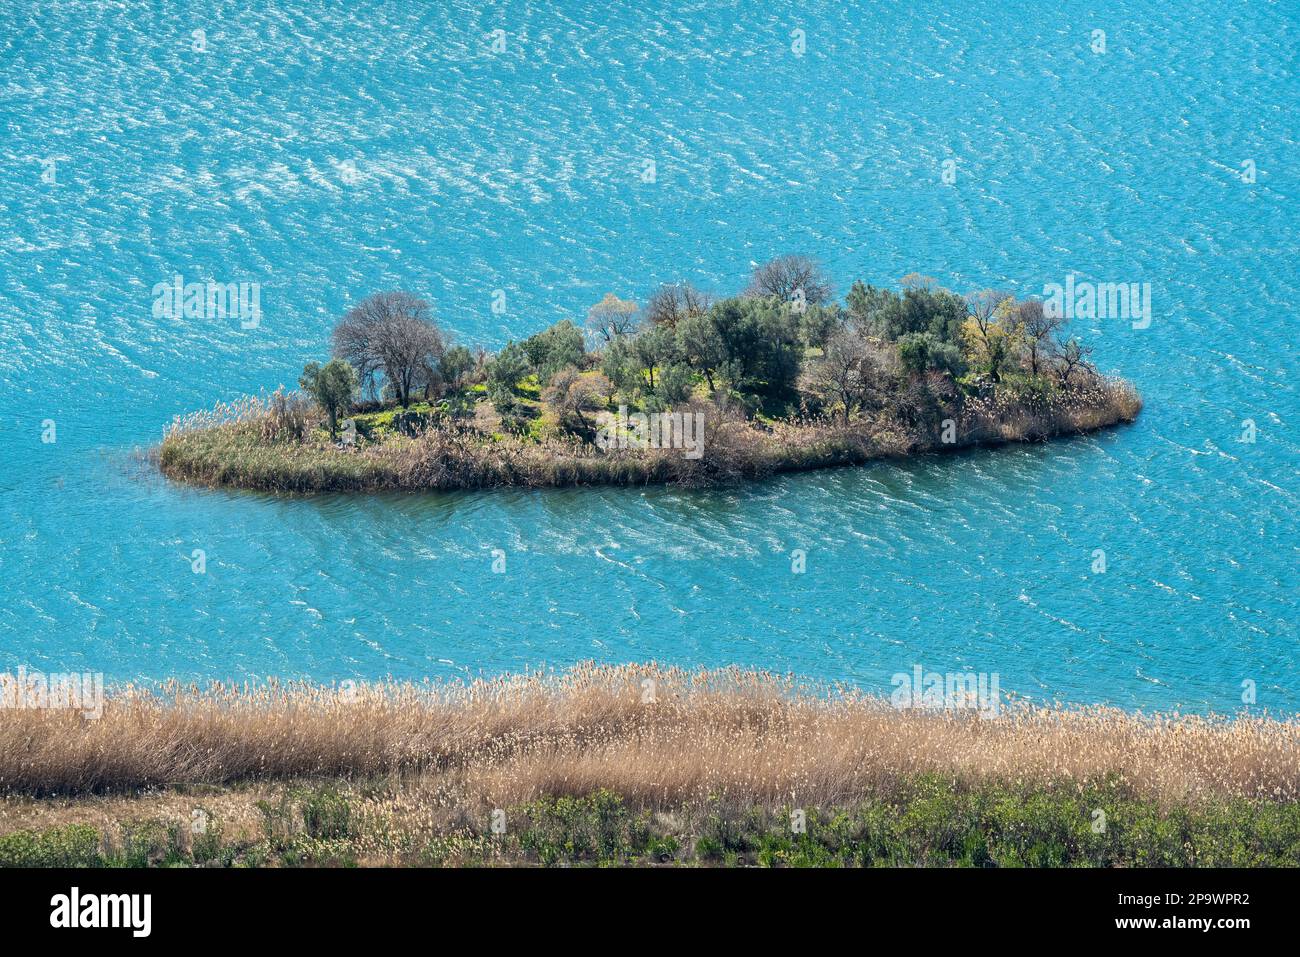 Une petite île, le site des ruines antiques de Lissai, sur le lac Kocagol près de la ville de Dalaman dans la province de Mugla en Turquie. Banque D'Images